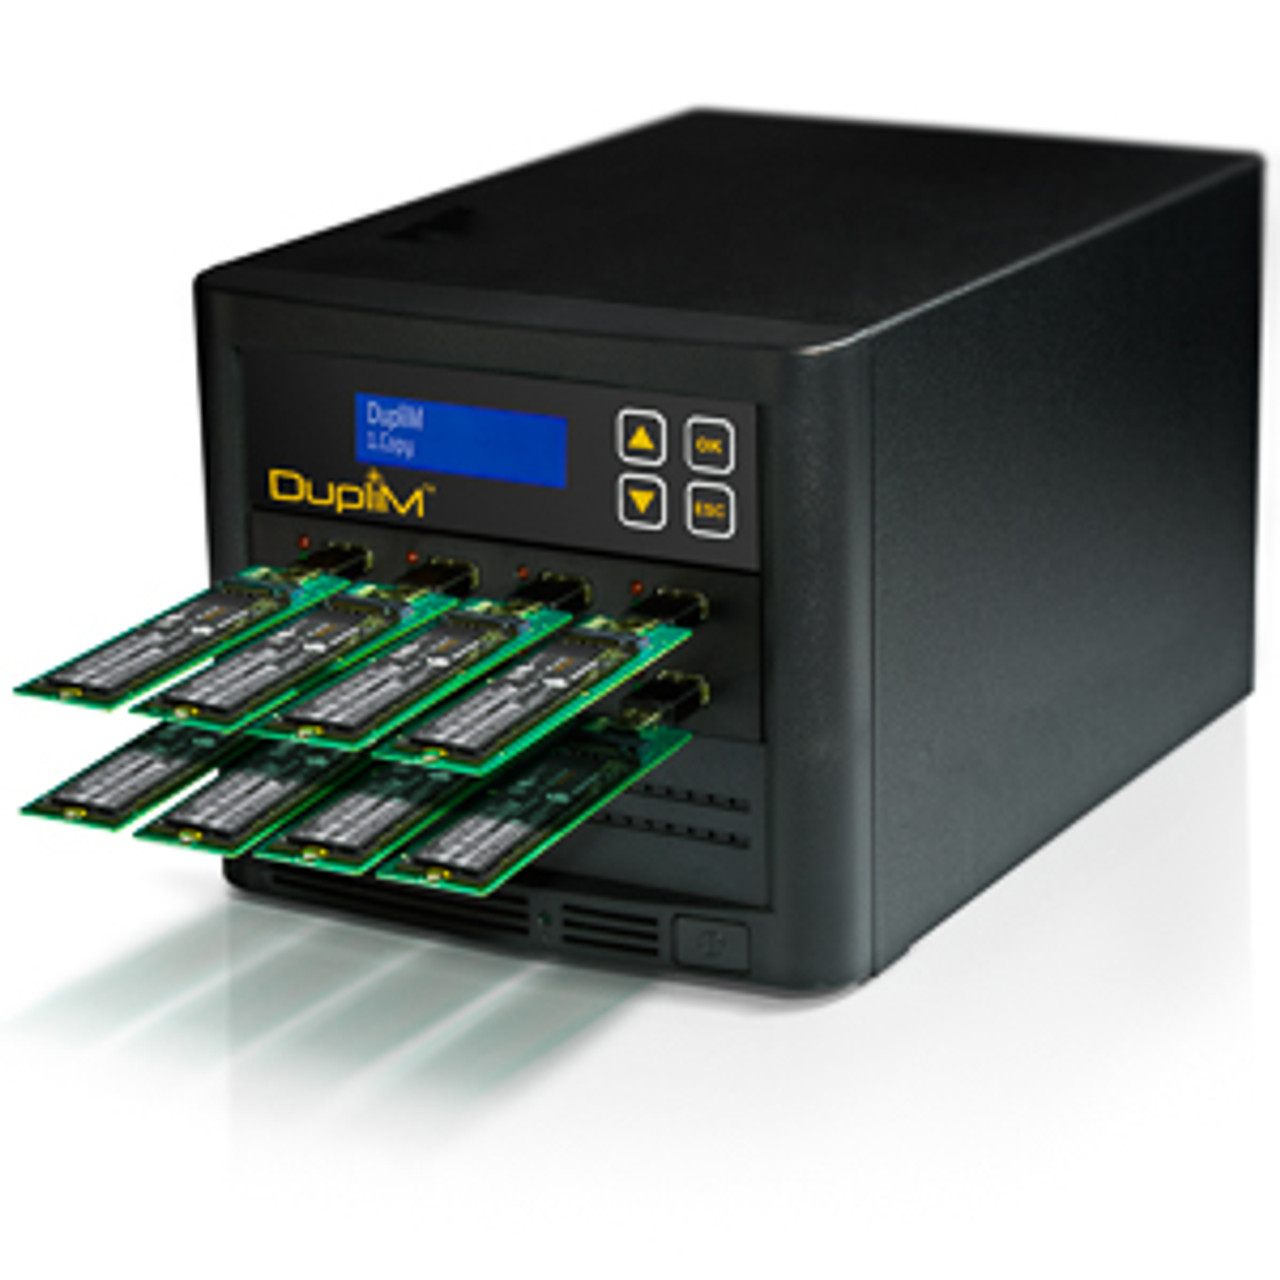 DupliM M.2 NVMe Adapter 2-Pack for USB Duplicators Demo View